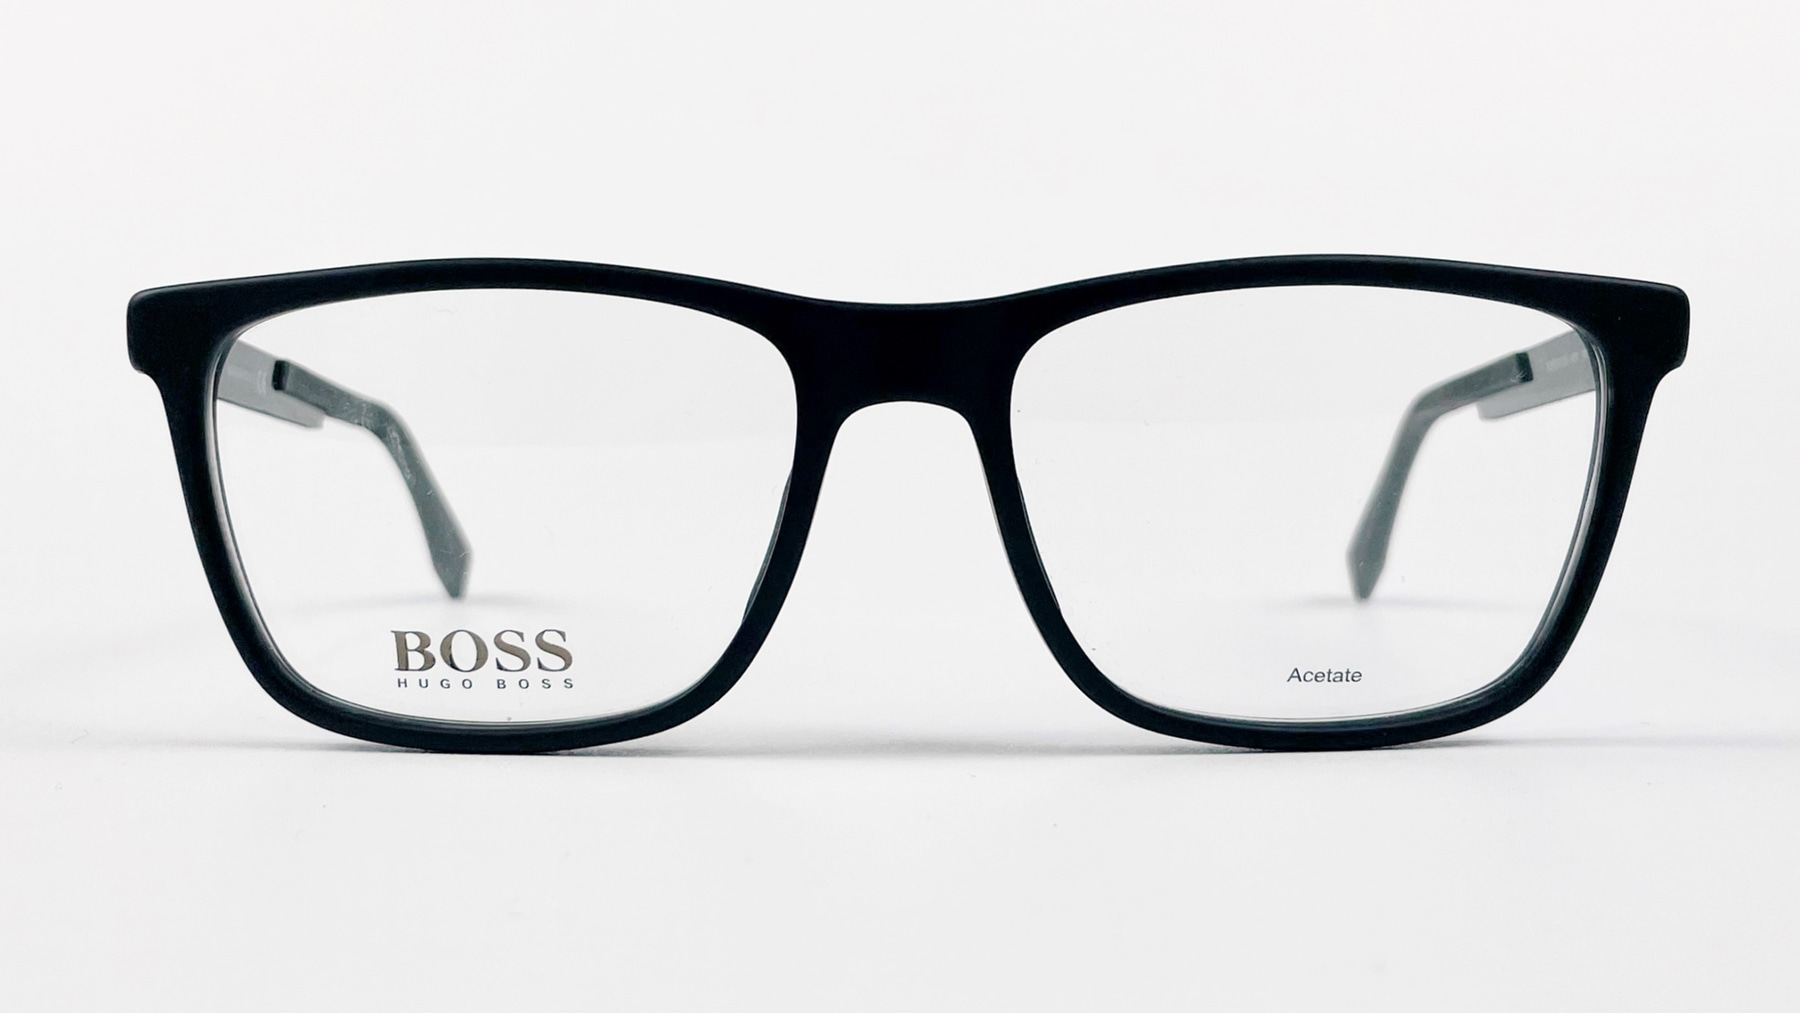 HUGO BOSS 0733 KD1, Korean glasses, sunglasses, eyeglasses, glasses